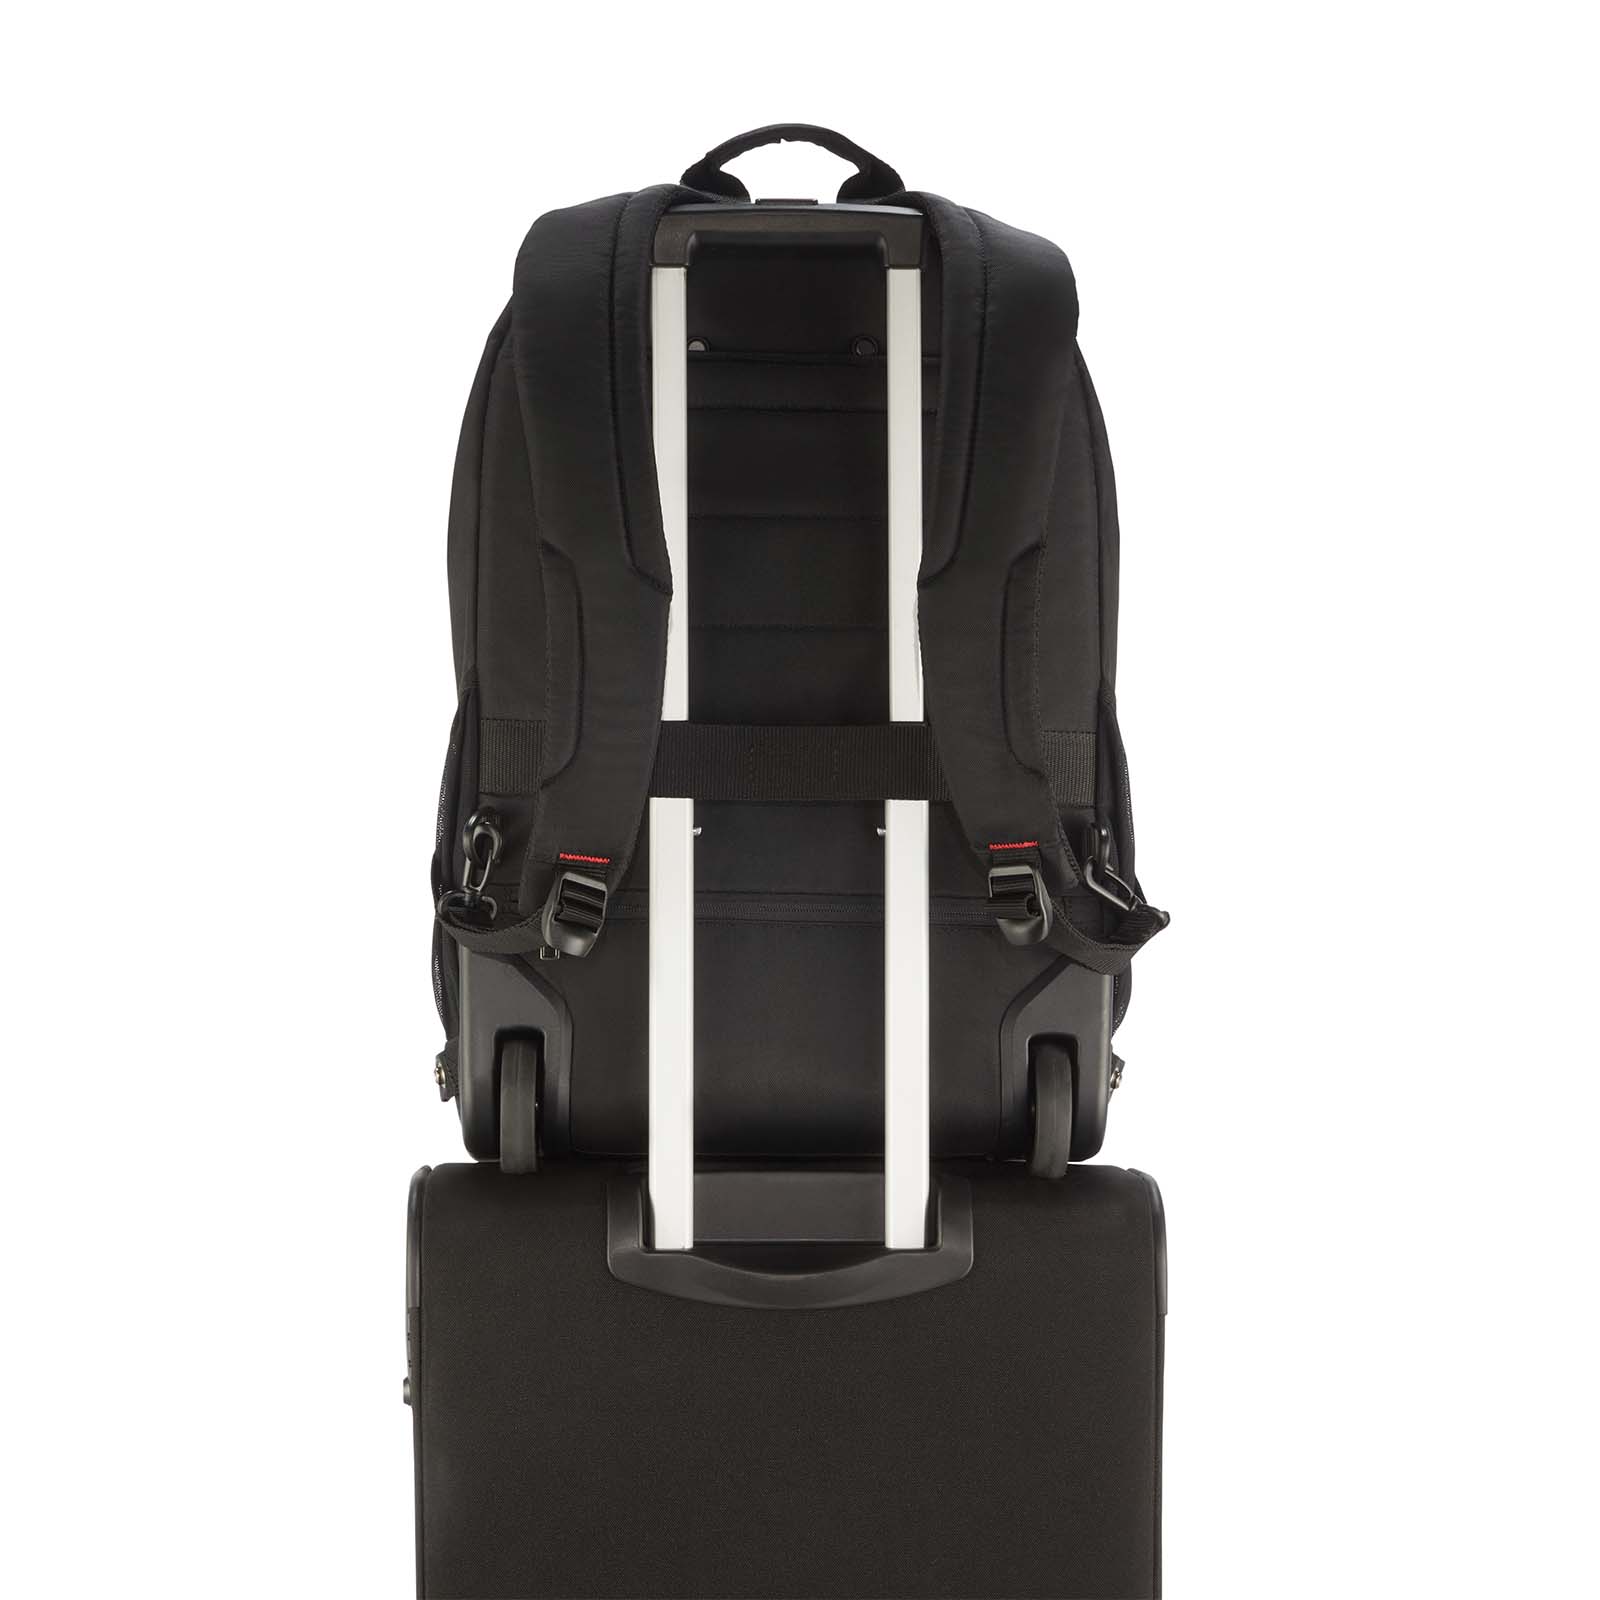 Samsonite-Guardit-2-17-Inch-Wheeled-Laptop-Backpack-Smart-Sleeve